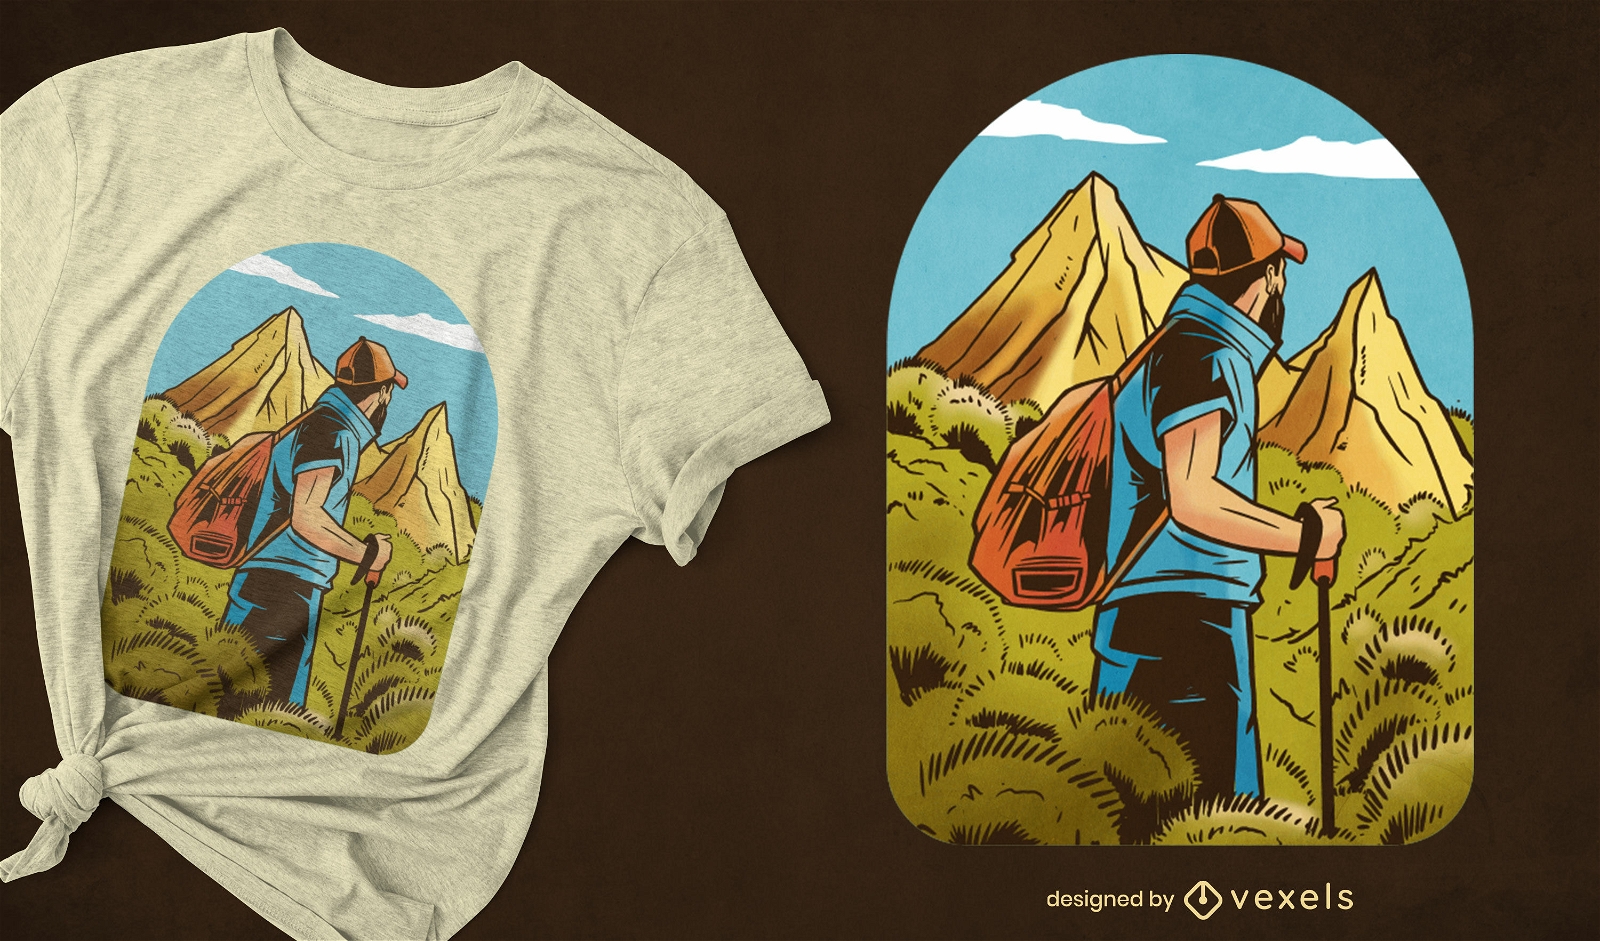 Man hiking in mountains t-shirt design